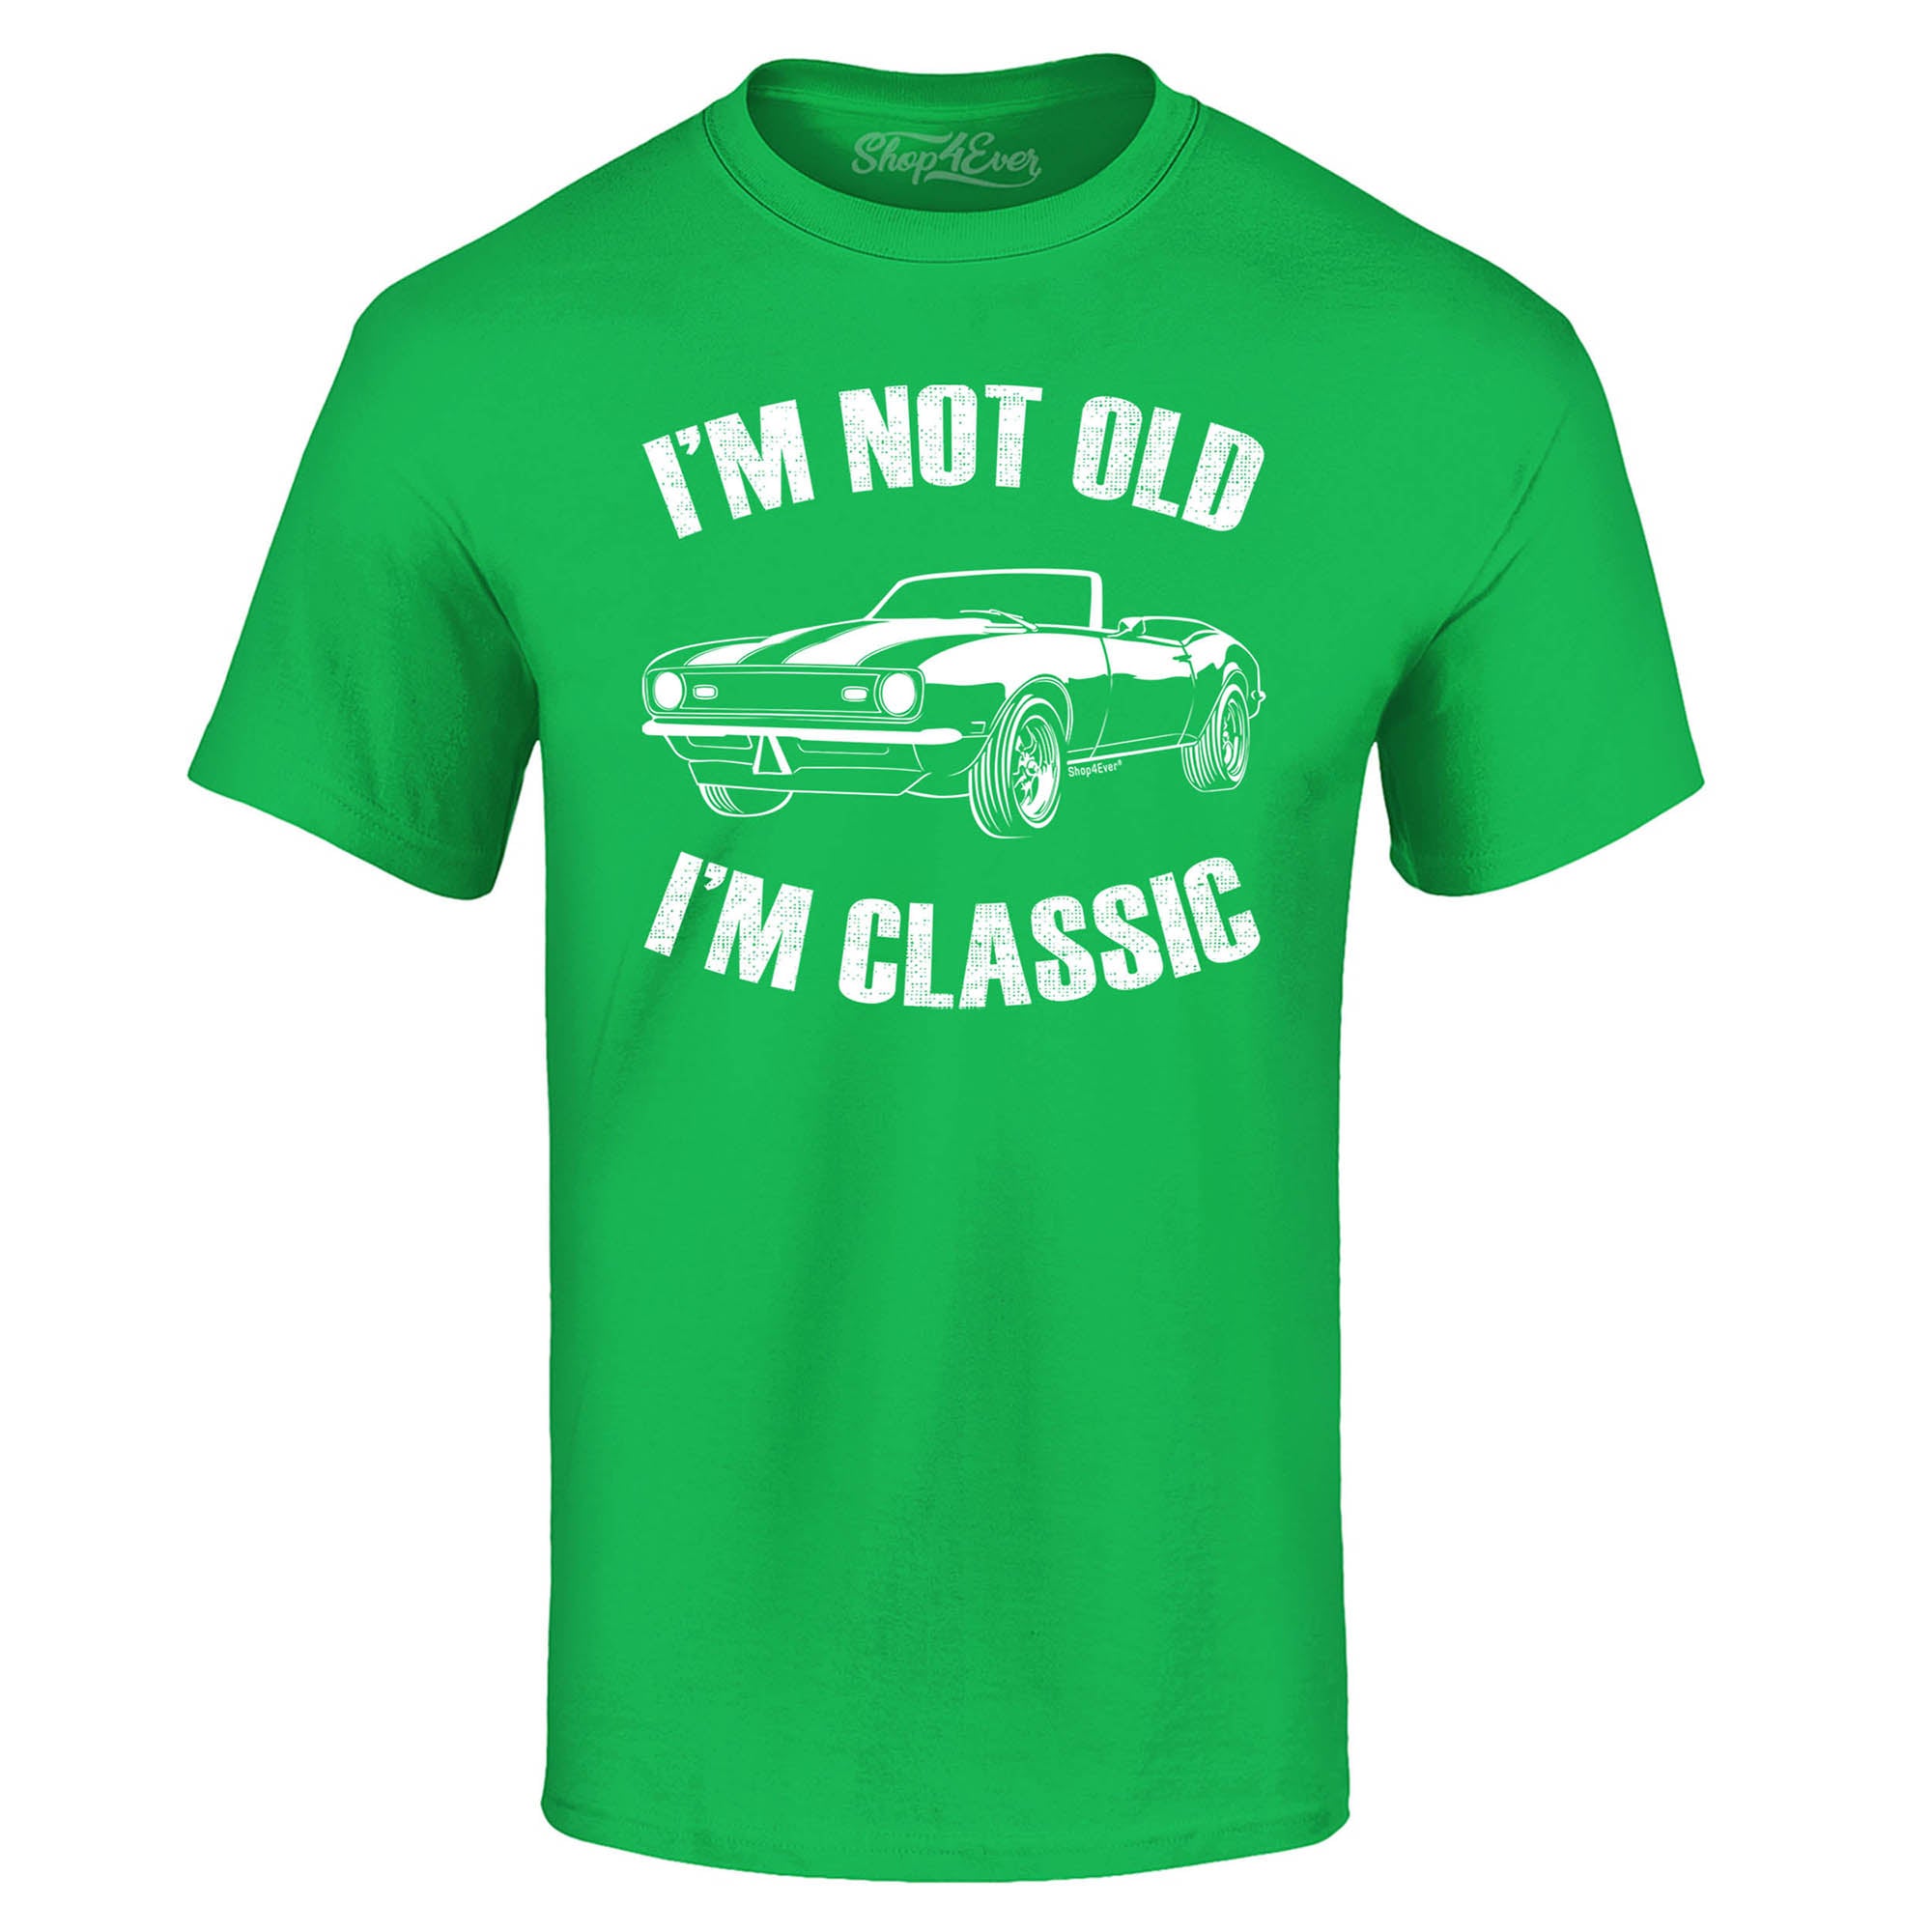 I'm Not Old I'm Classic T-Shirt